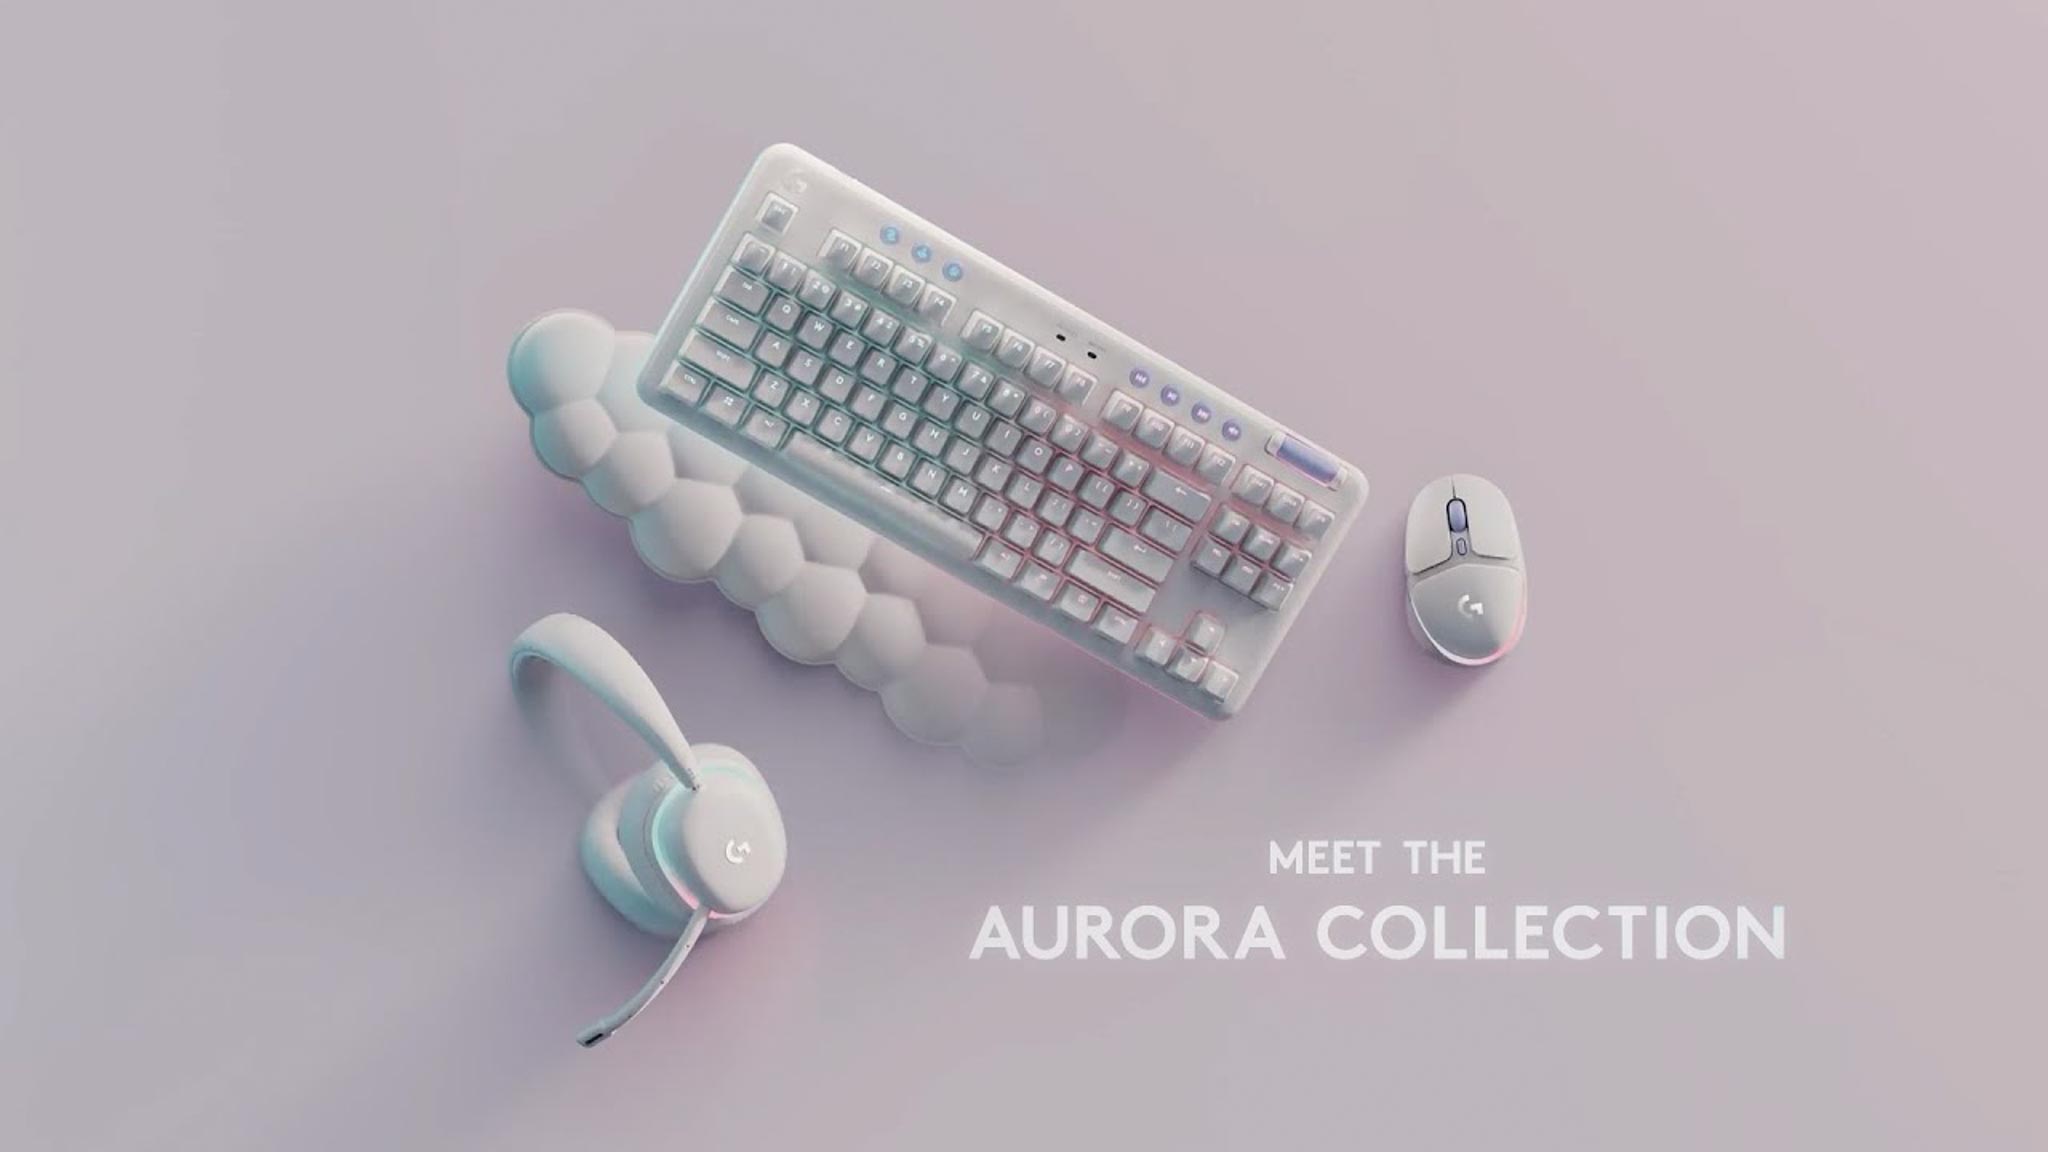 Chào mừng đến với thời đại mới của gaming cùng bộ sưu tập Aurora Collection của Logitech G